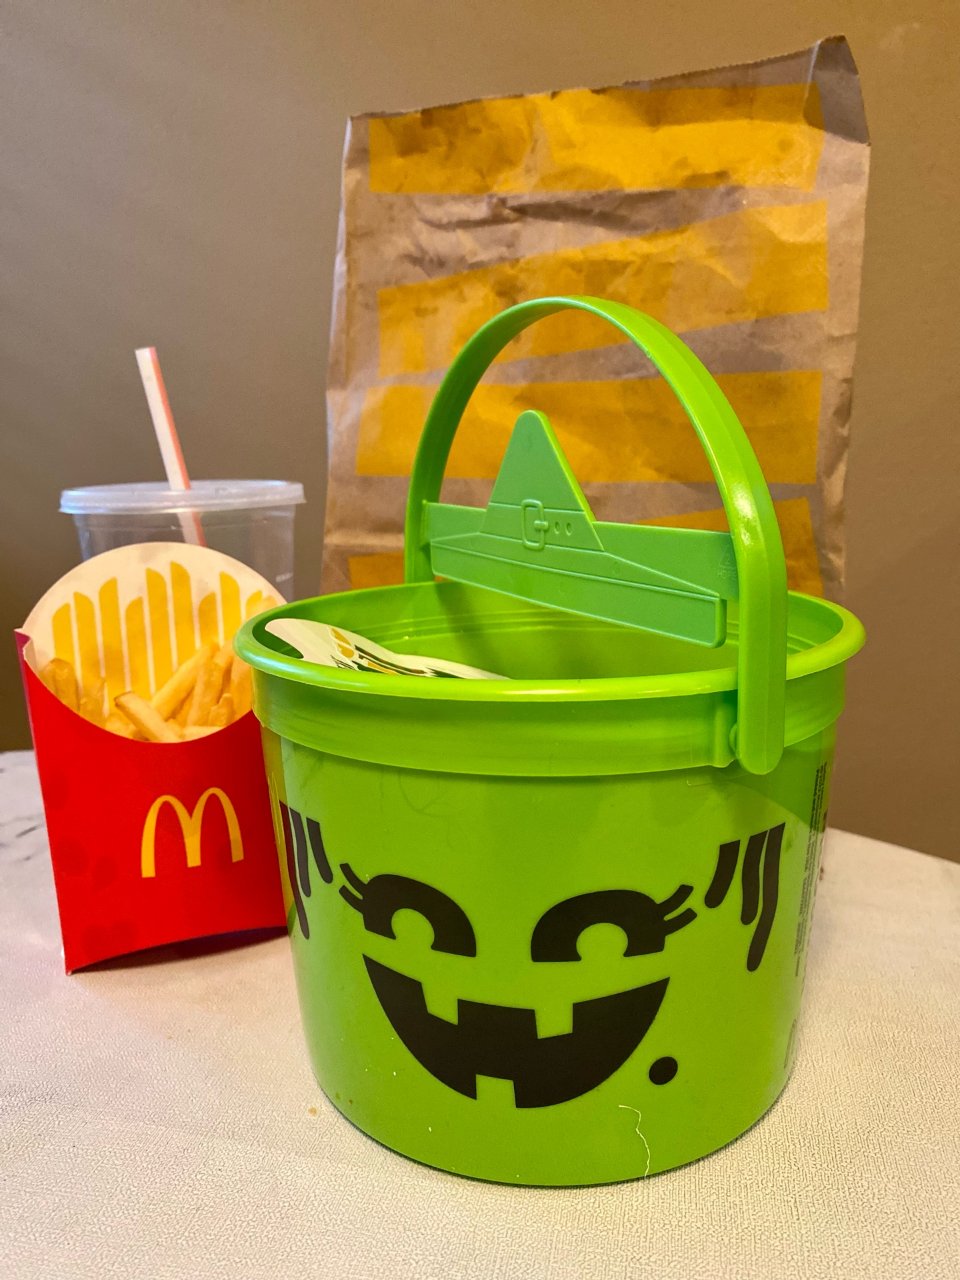 麦当劳的小绿桶...